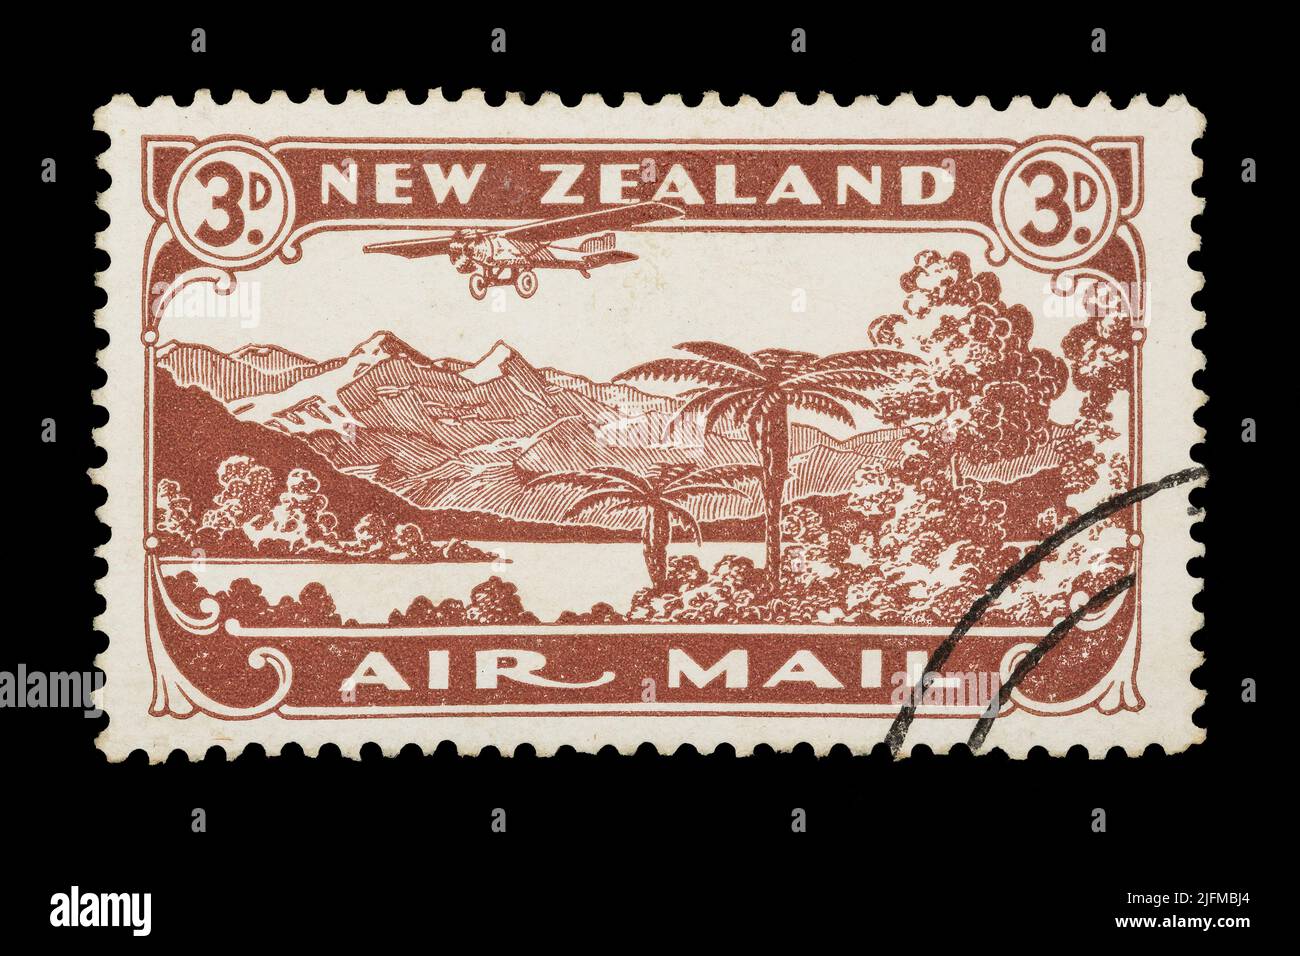 Eine neuseeländische Luftpostmarke von 1931, die ein Flugzeug zeigt, das über einer neuseeländischen Landschaft fliegt Stockfoto